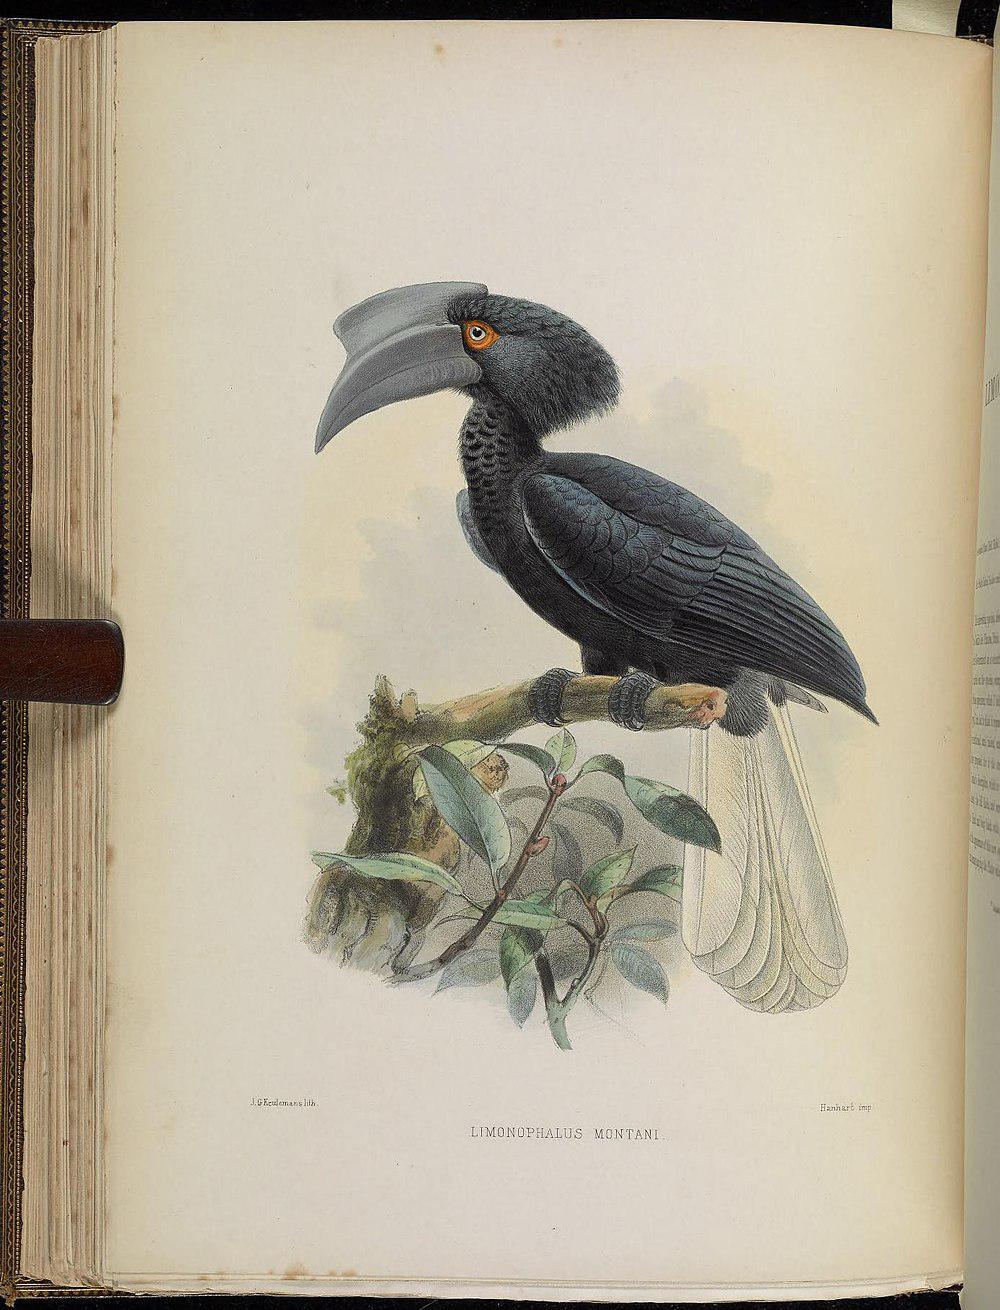 黑嘴斑犀鸟 / Sulu Hornbill / Anthracoceros montani